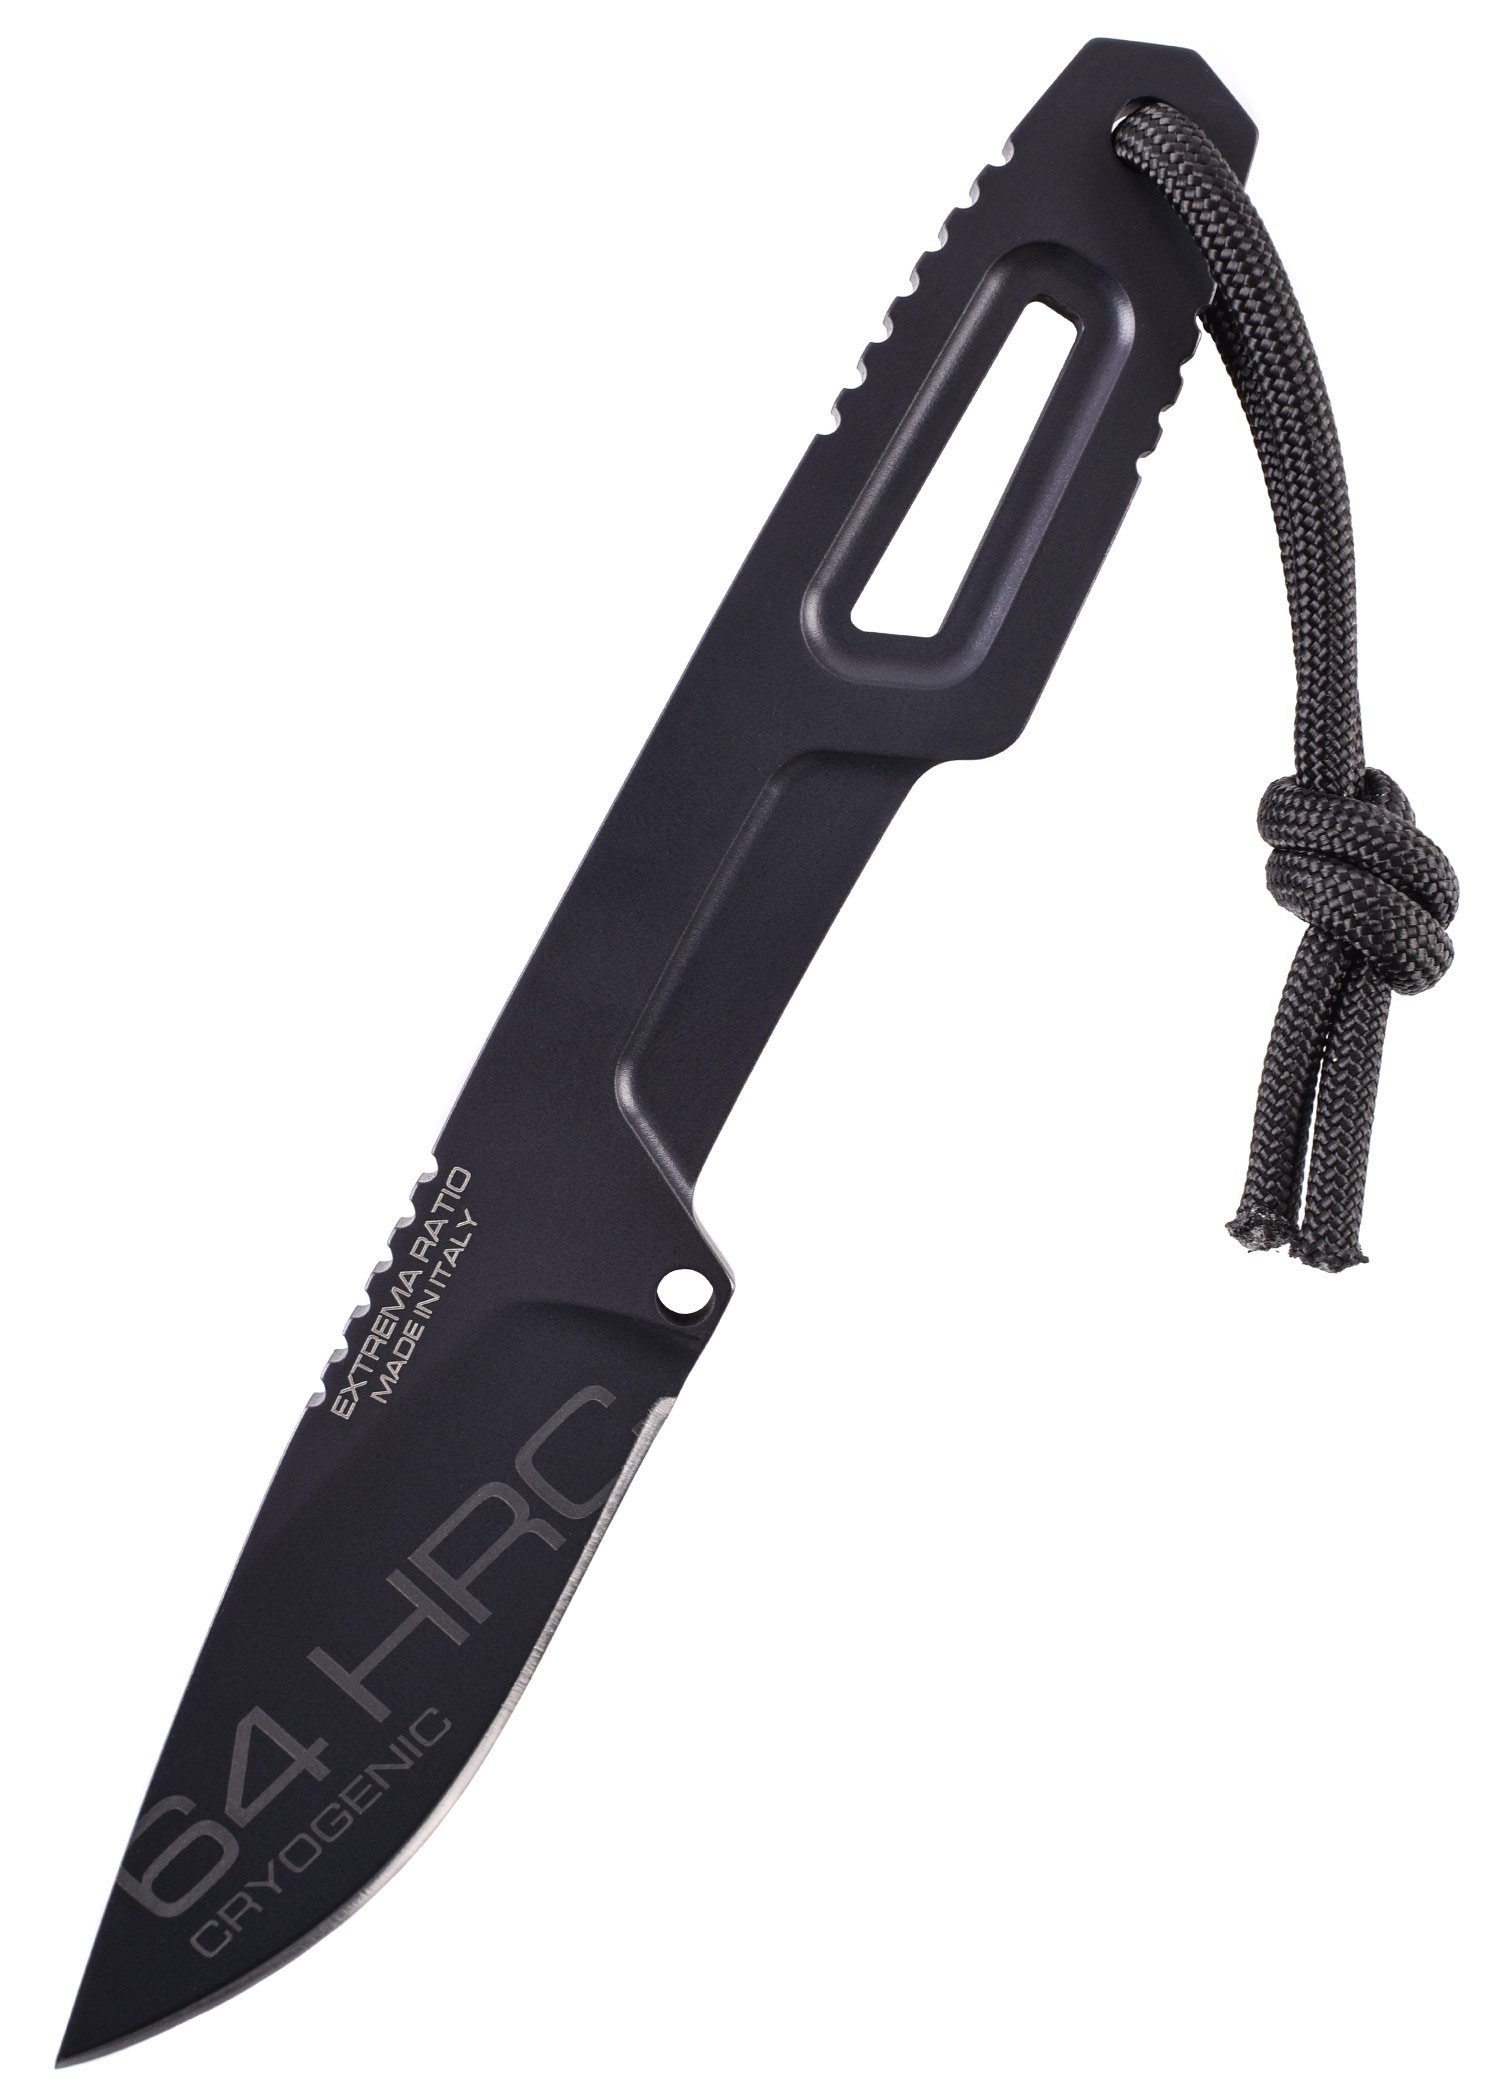 Extrema Ratio Universalmesser Extrema Ratio Satre S 600 Feststehendes Neckknife mit Böhler Stahl, (1 St)